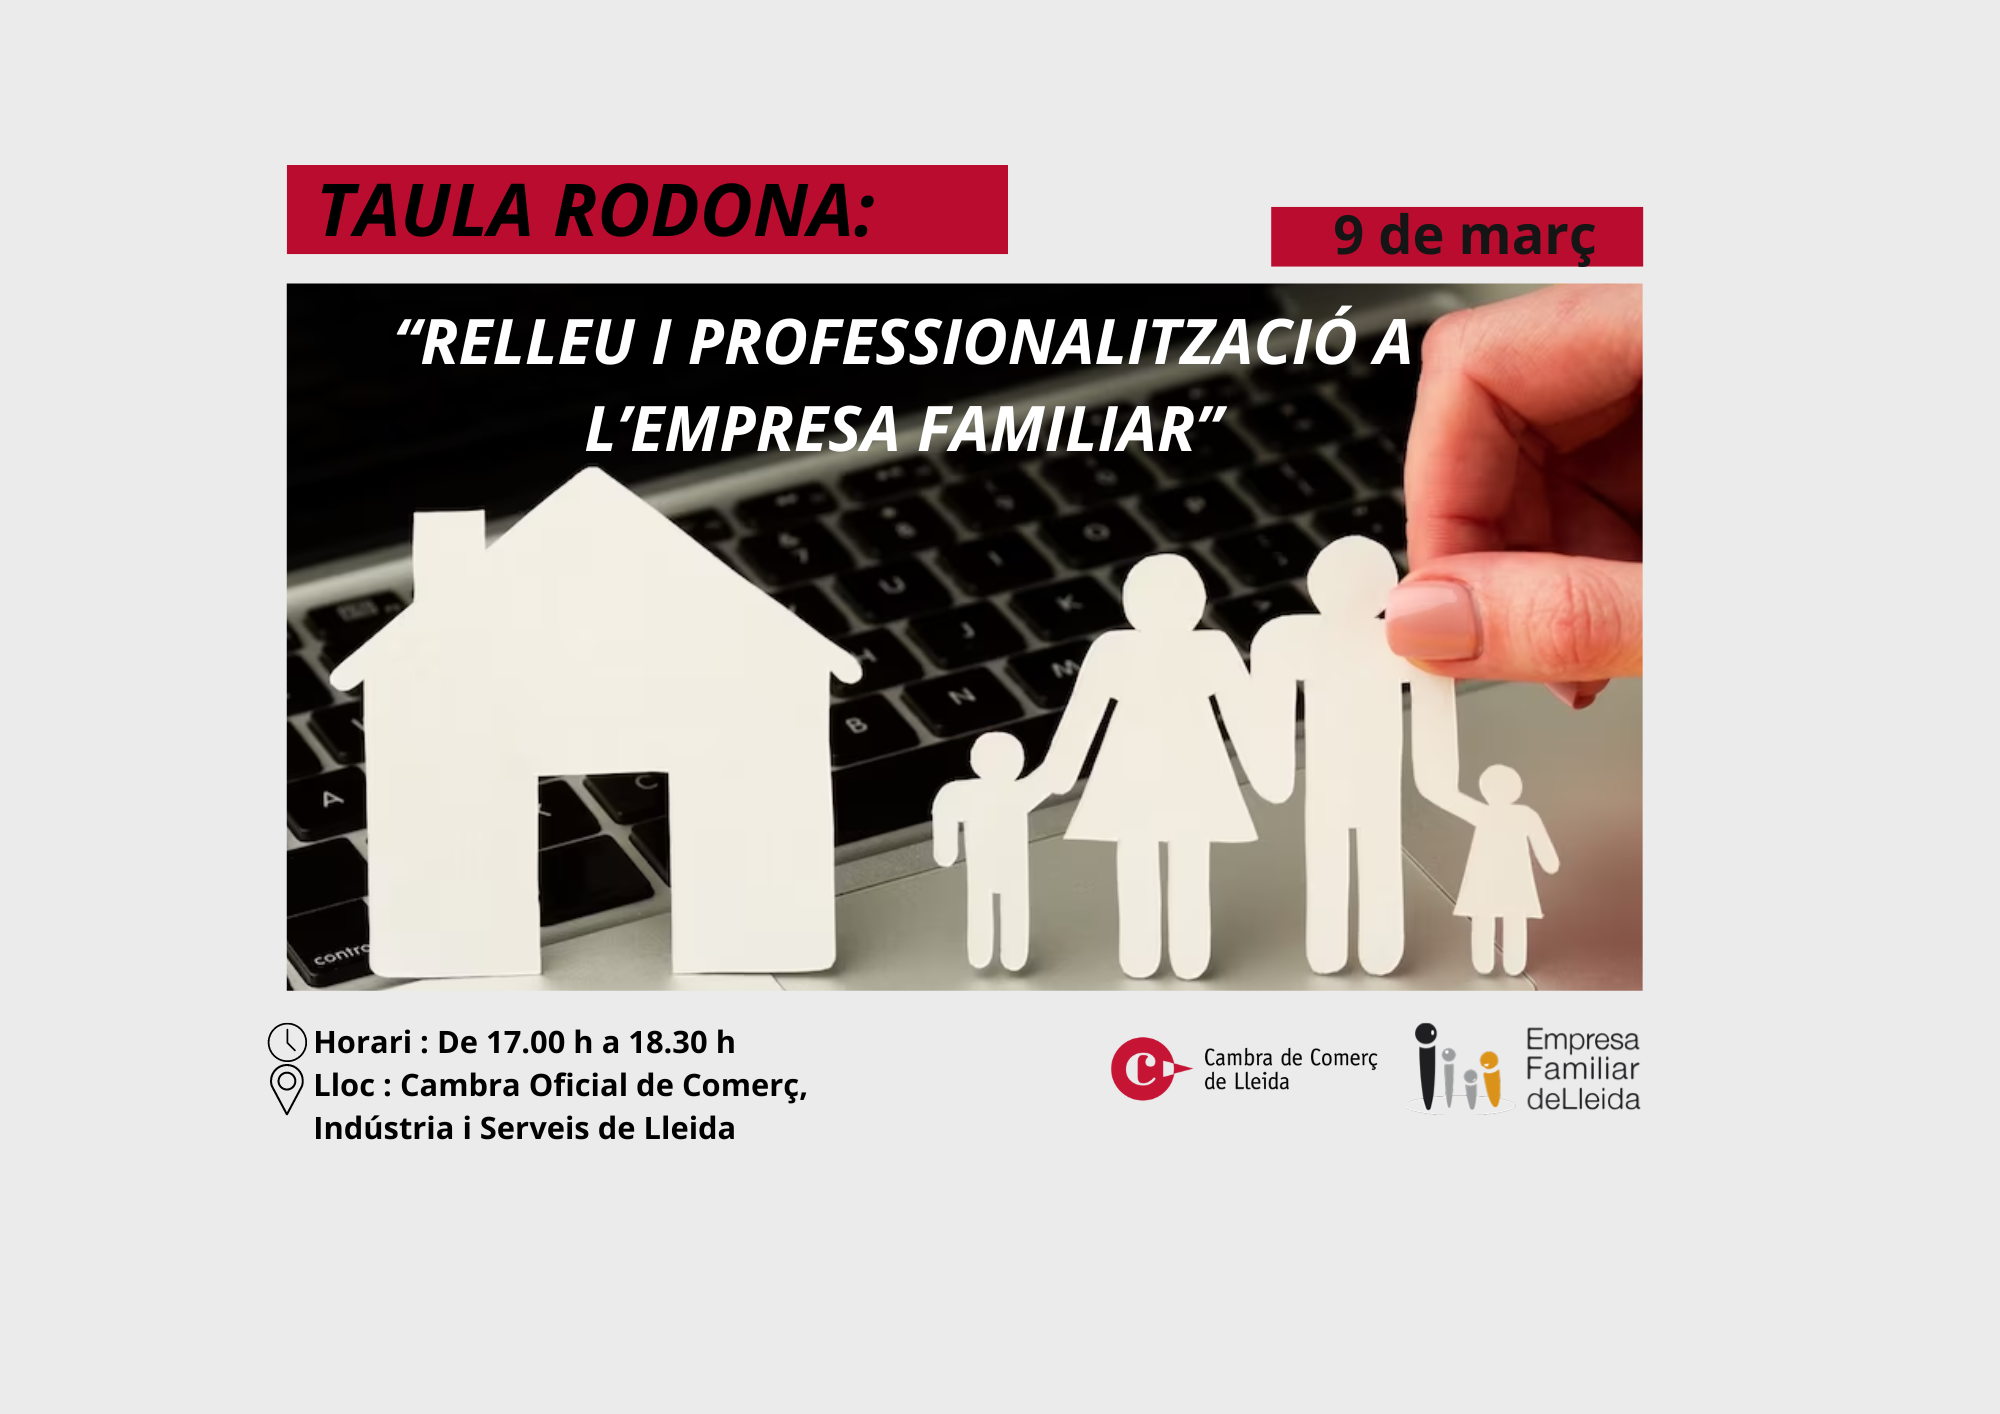 TAULA RODONA: “Relleu i professionalització a l’empresa familiar ”